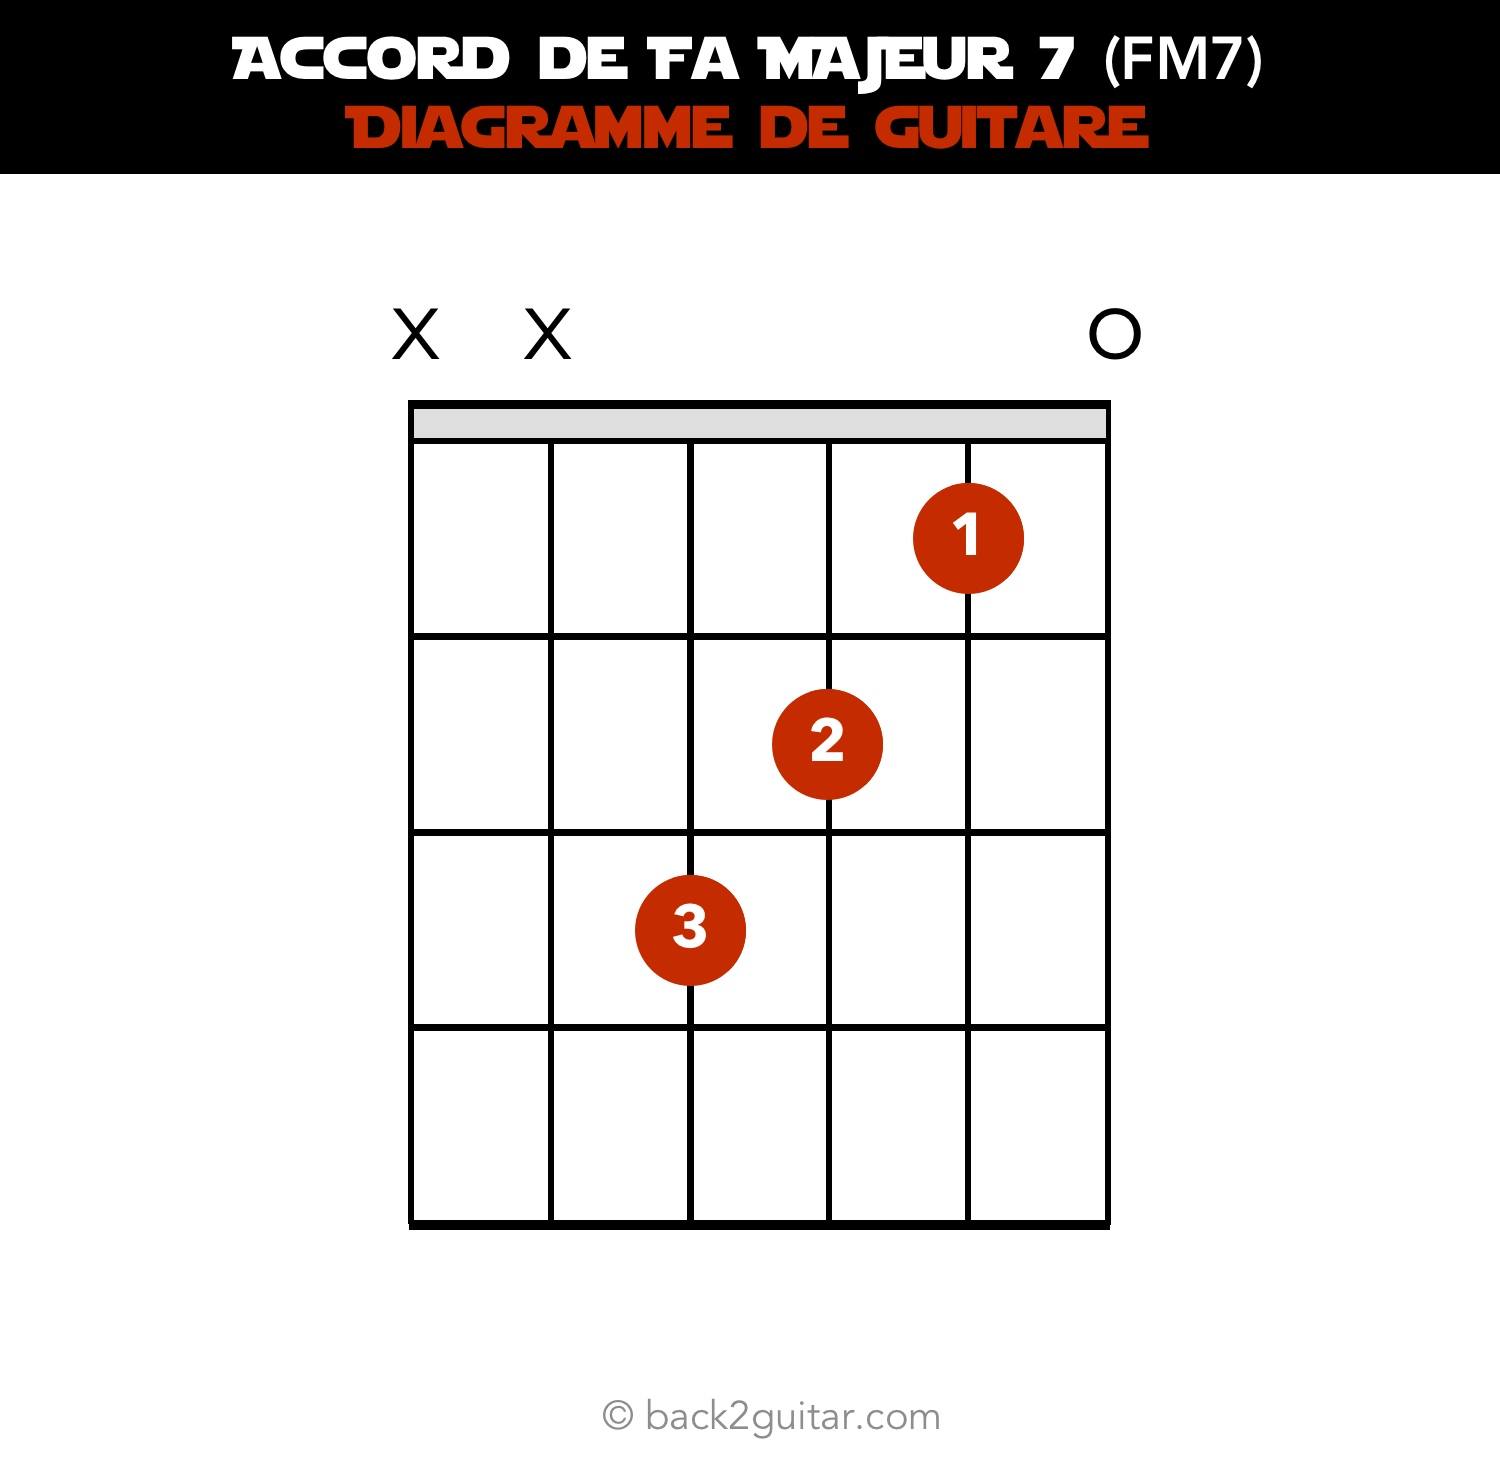 accord guitare fa majeur 7 diagramme guitare (FM7)